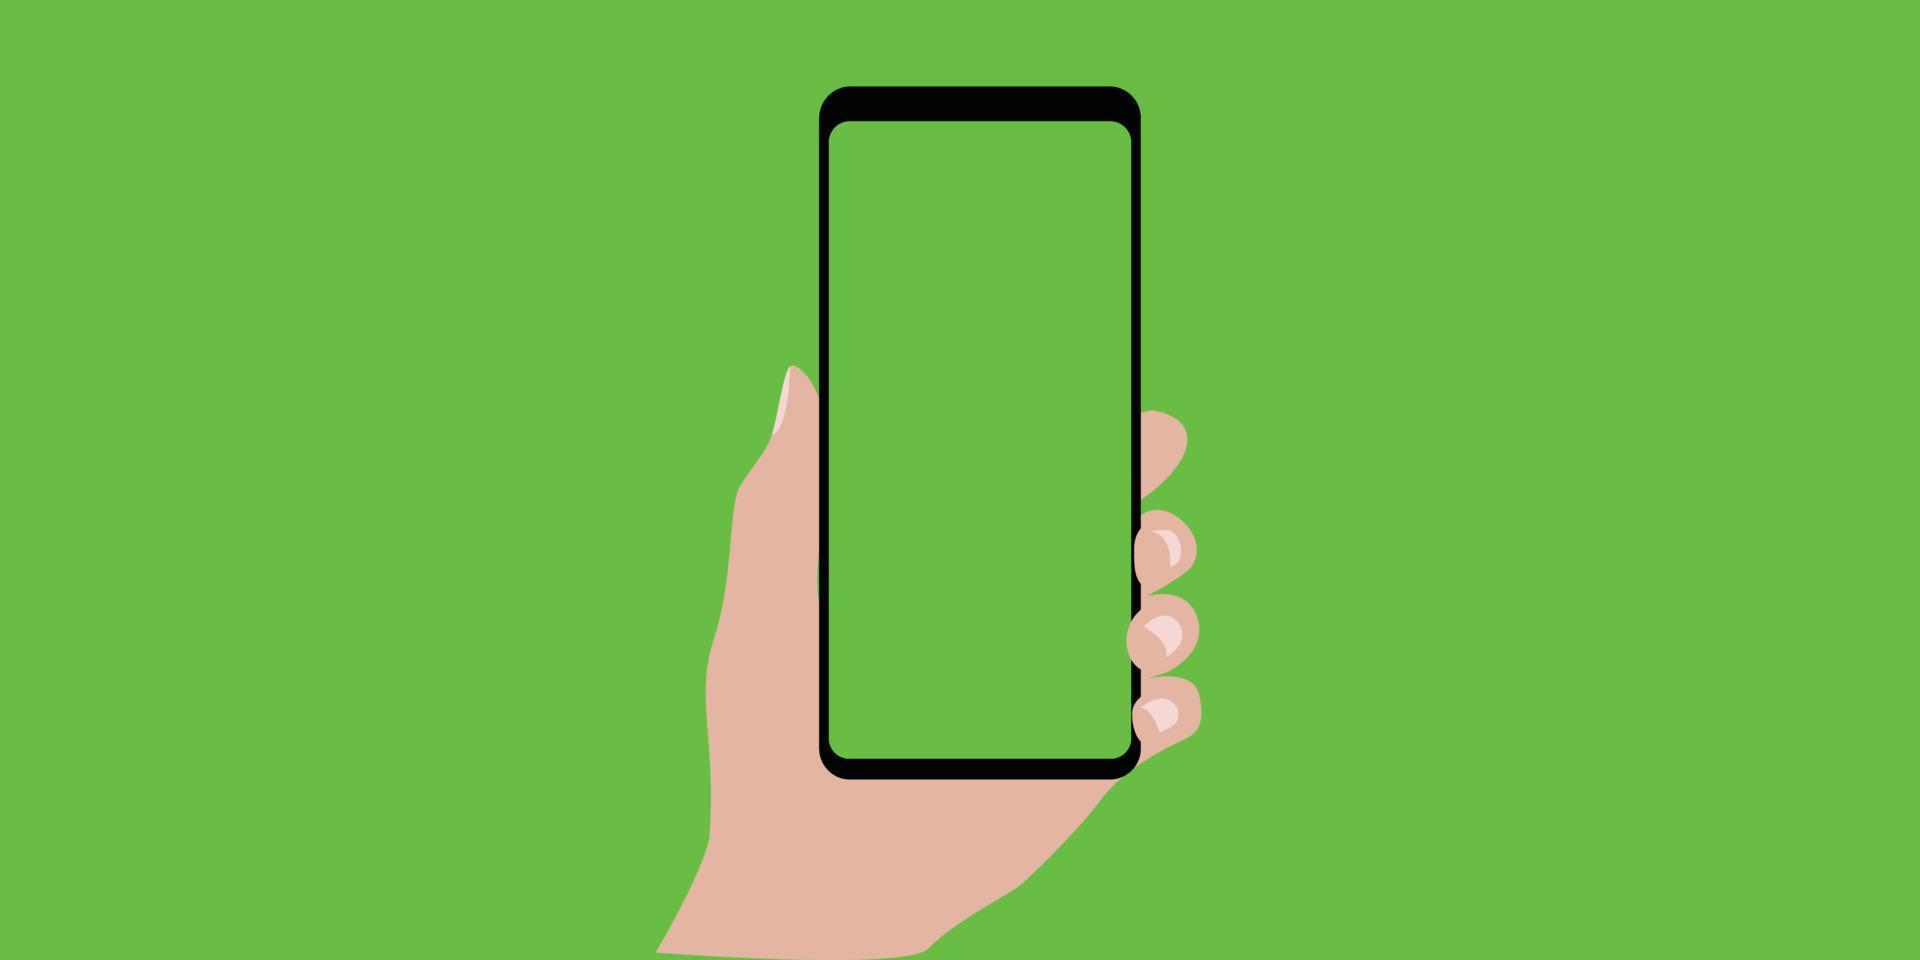 teléfono con verde pantalla croma llave antecedentes. vector ilustración